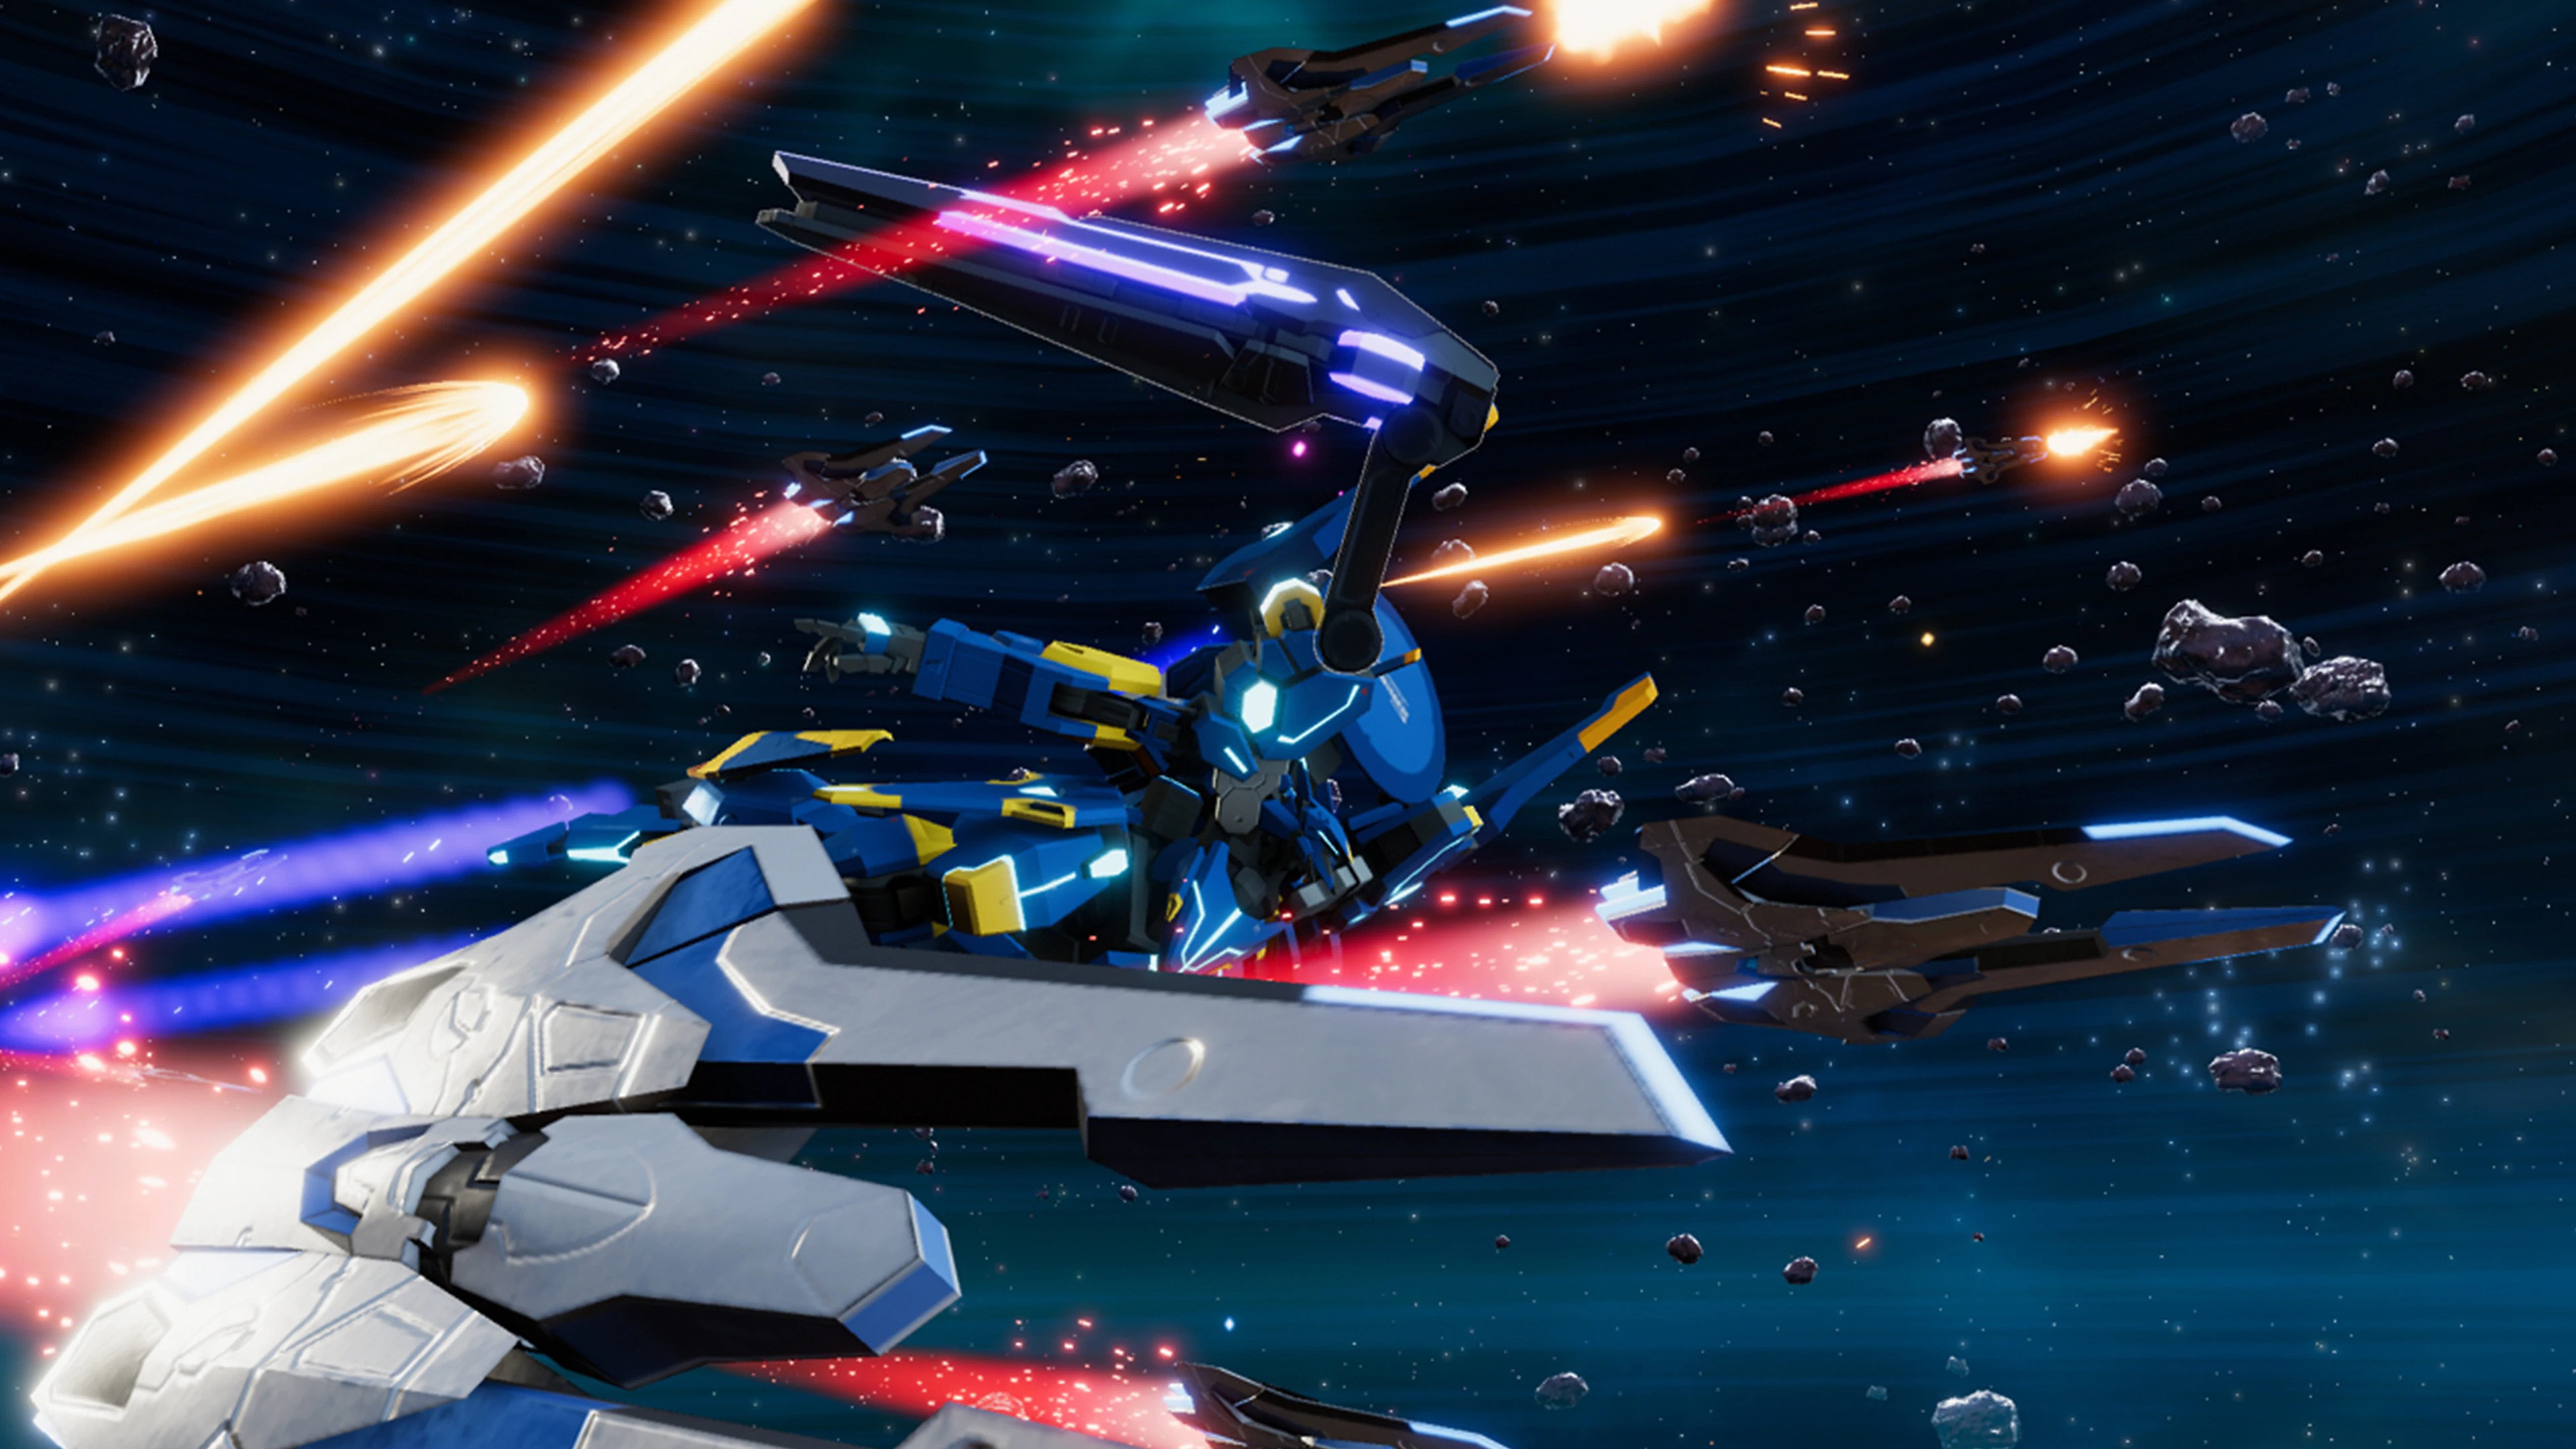 Captura de pantalla de Relayer que muestra un traje mecha volando por el espacio junto a varias naves espaciales